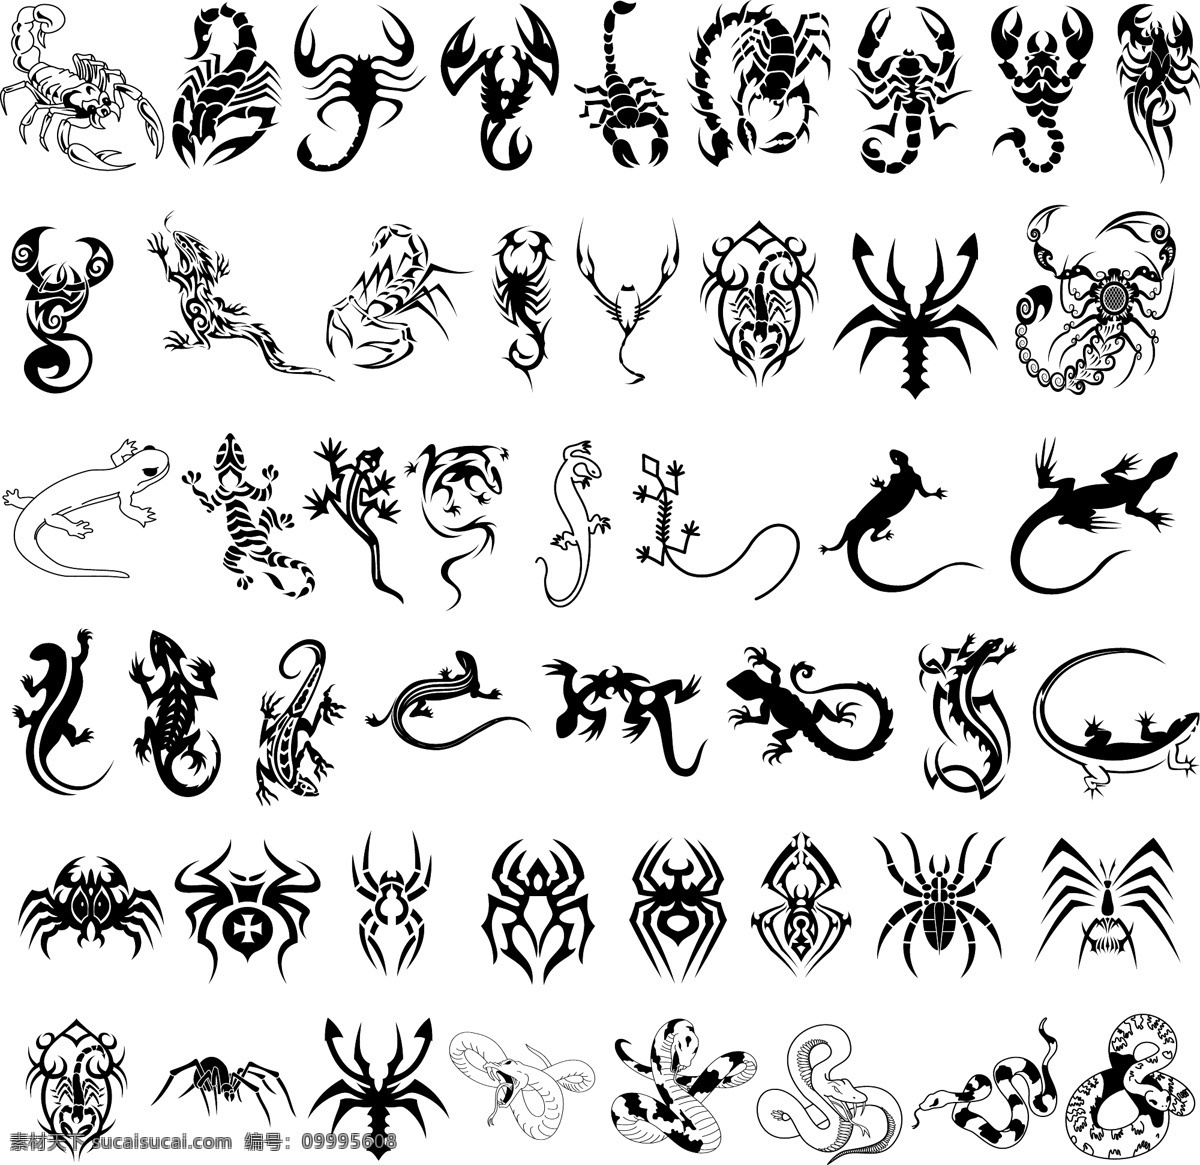 蝎子 壁虎 蜘蛛 蛇 冷血动物 恐怖 纹身 酷炫 霸气 矢量 矢量动物 其他生物 生物世界